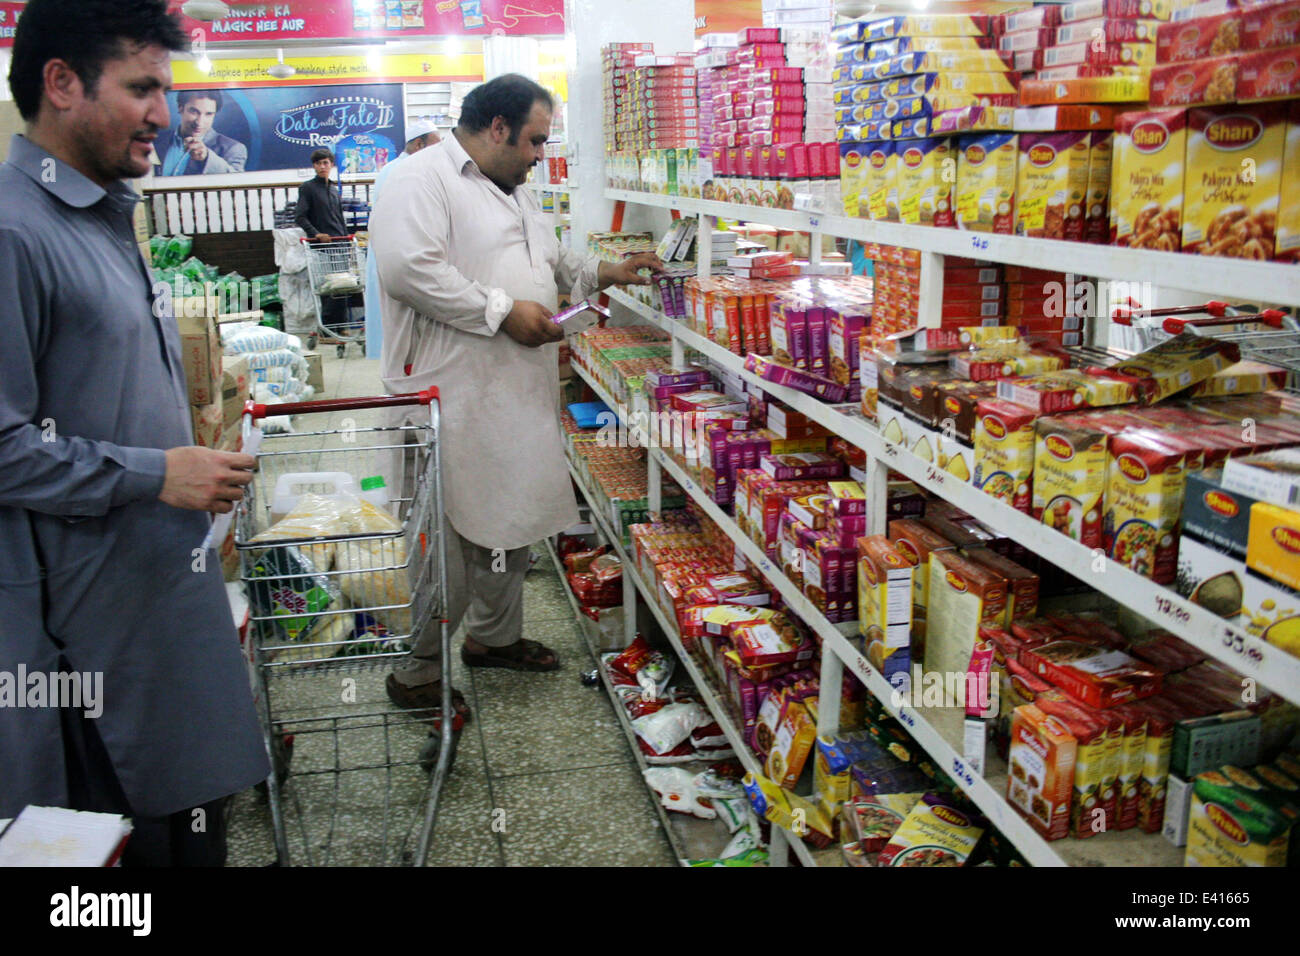 Peshawar, Pakistan. 2nd July, 2014. Pakistani men buy food at a store Stock Photo: 71326925 - Alamy